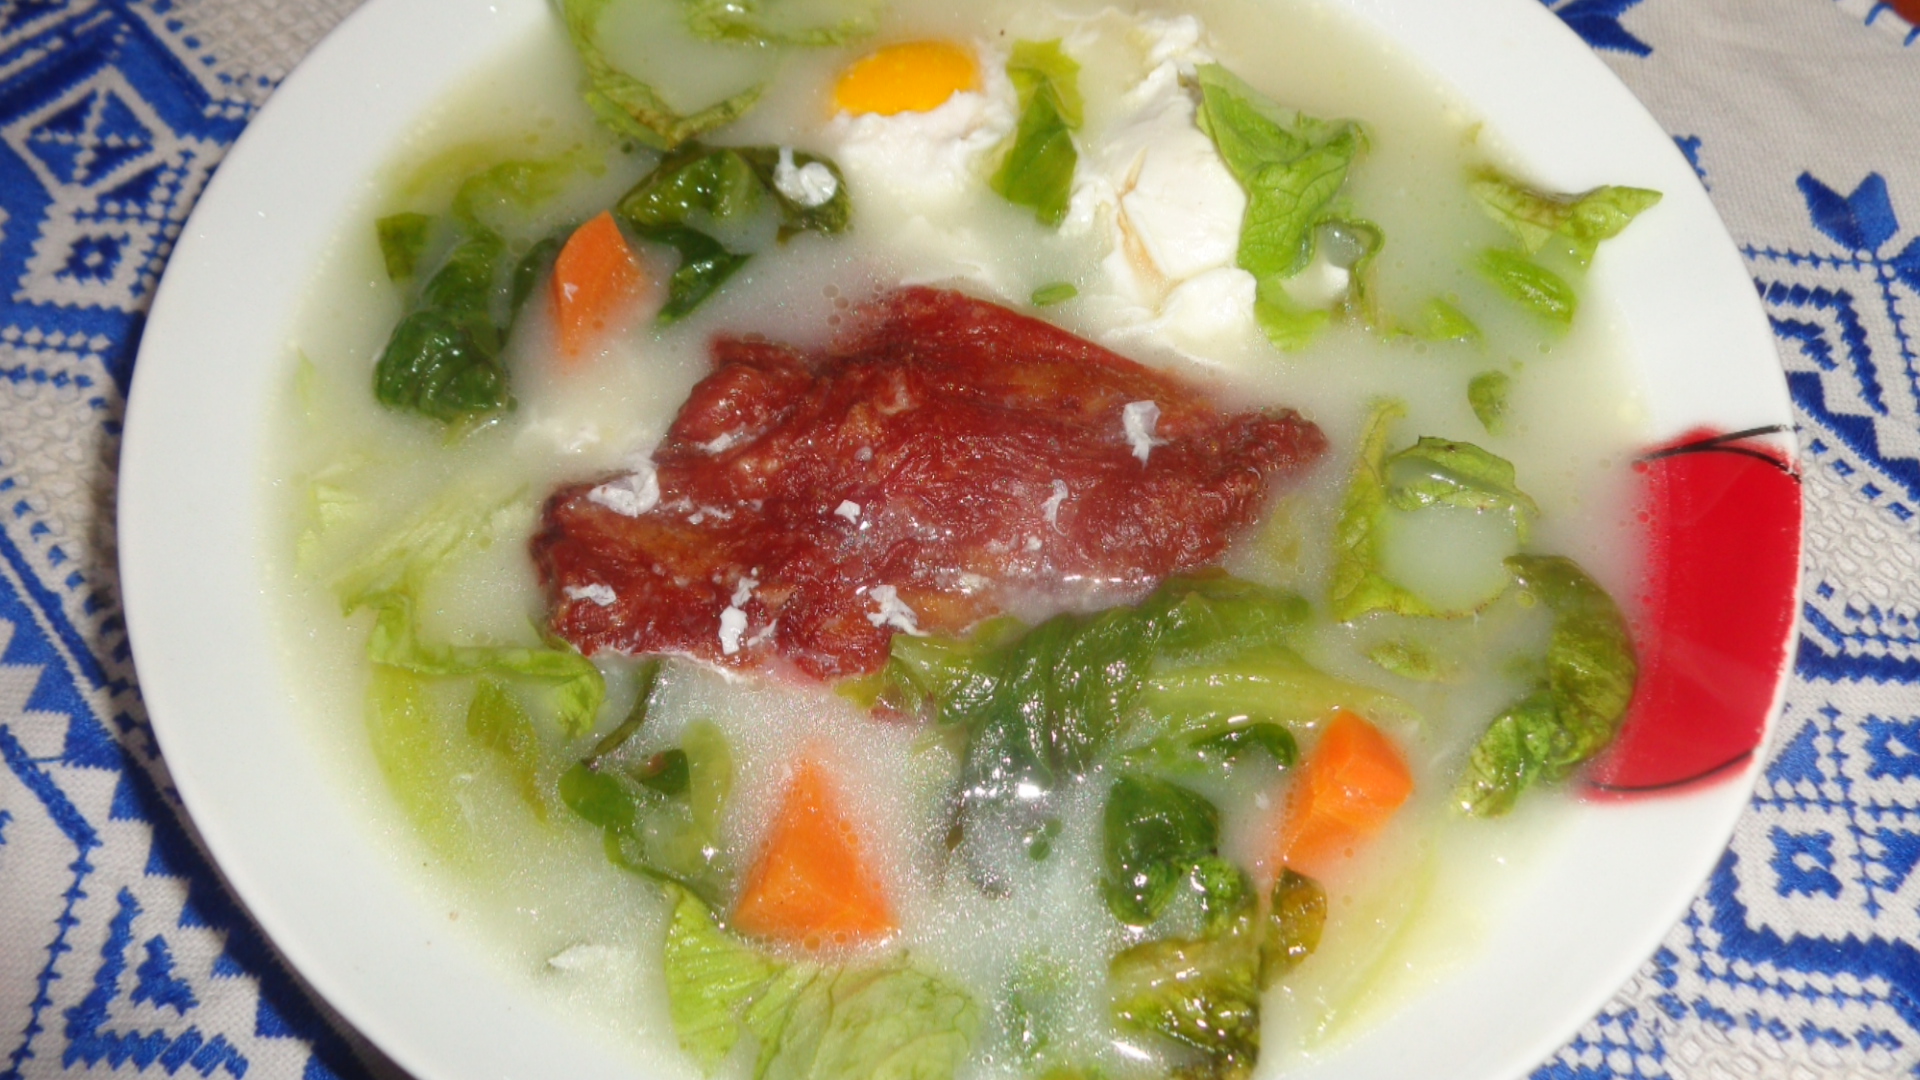 Zama (supa) taraneasca de salata